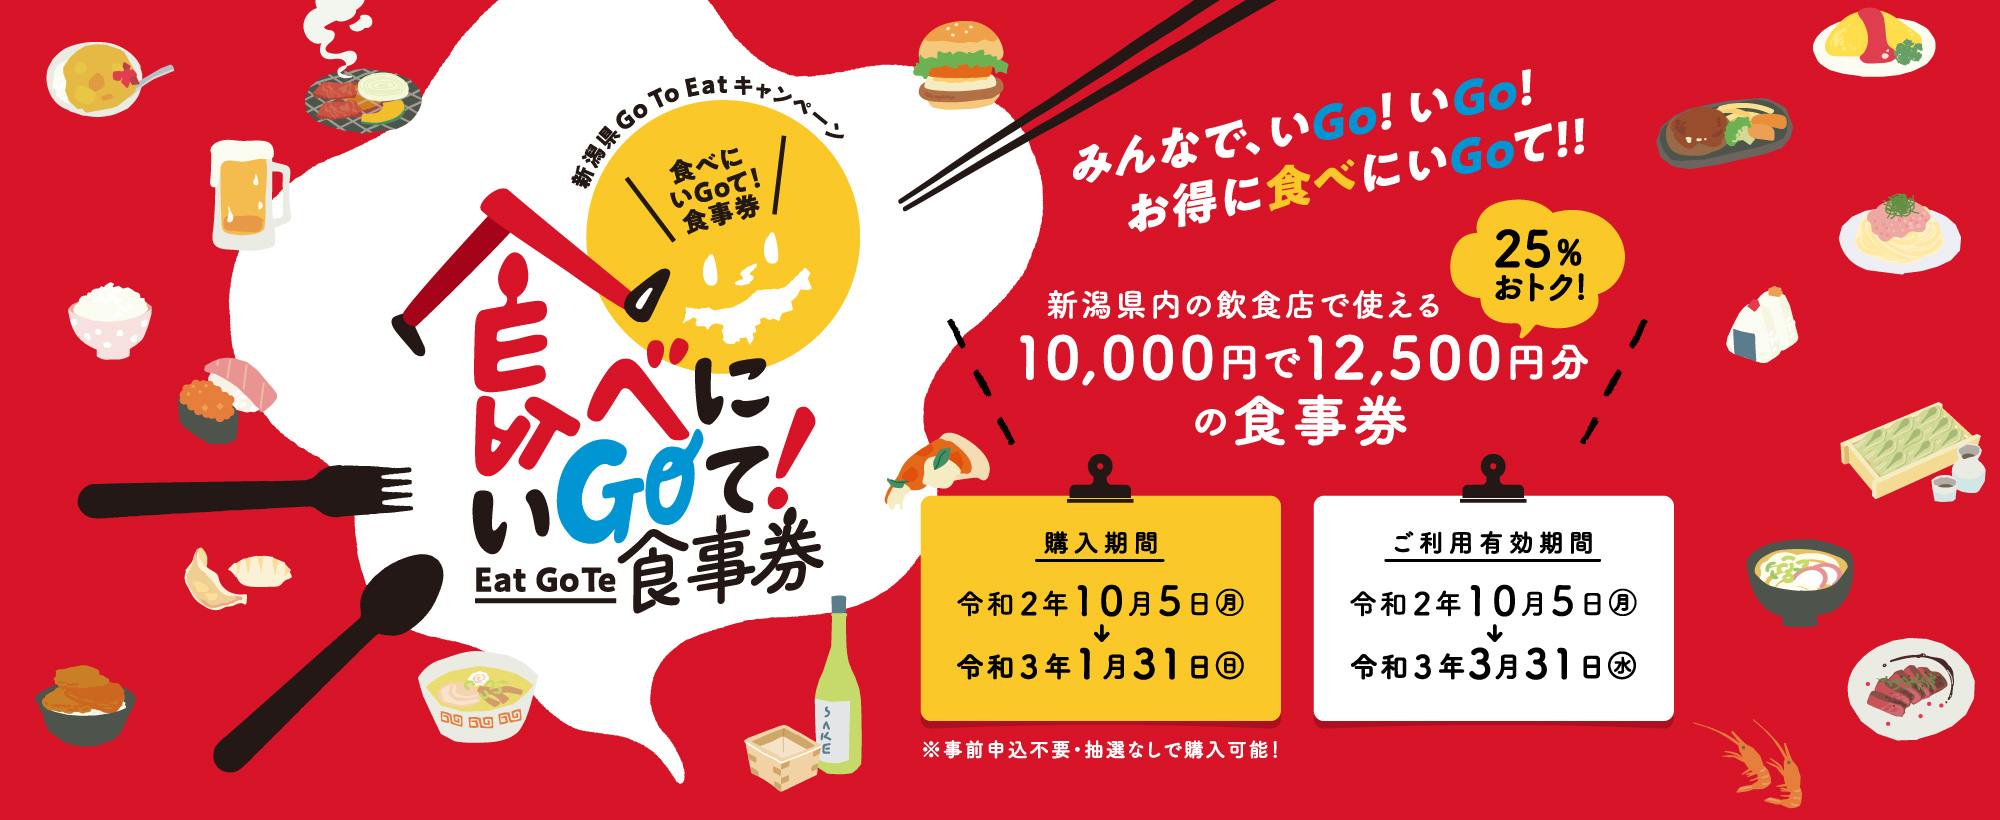 新潟県「Go To Eat」キャンペーン（食事券）取扱加盟店の募集について